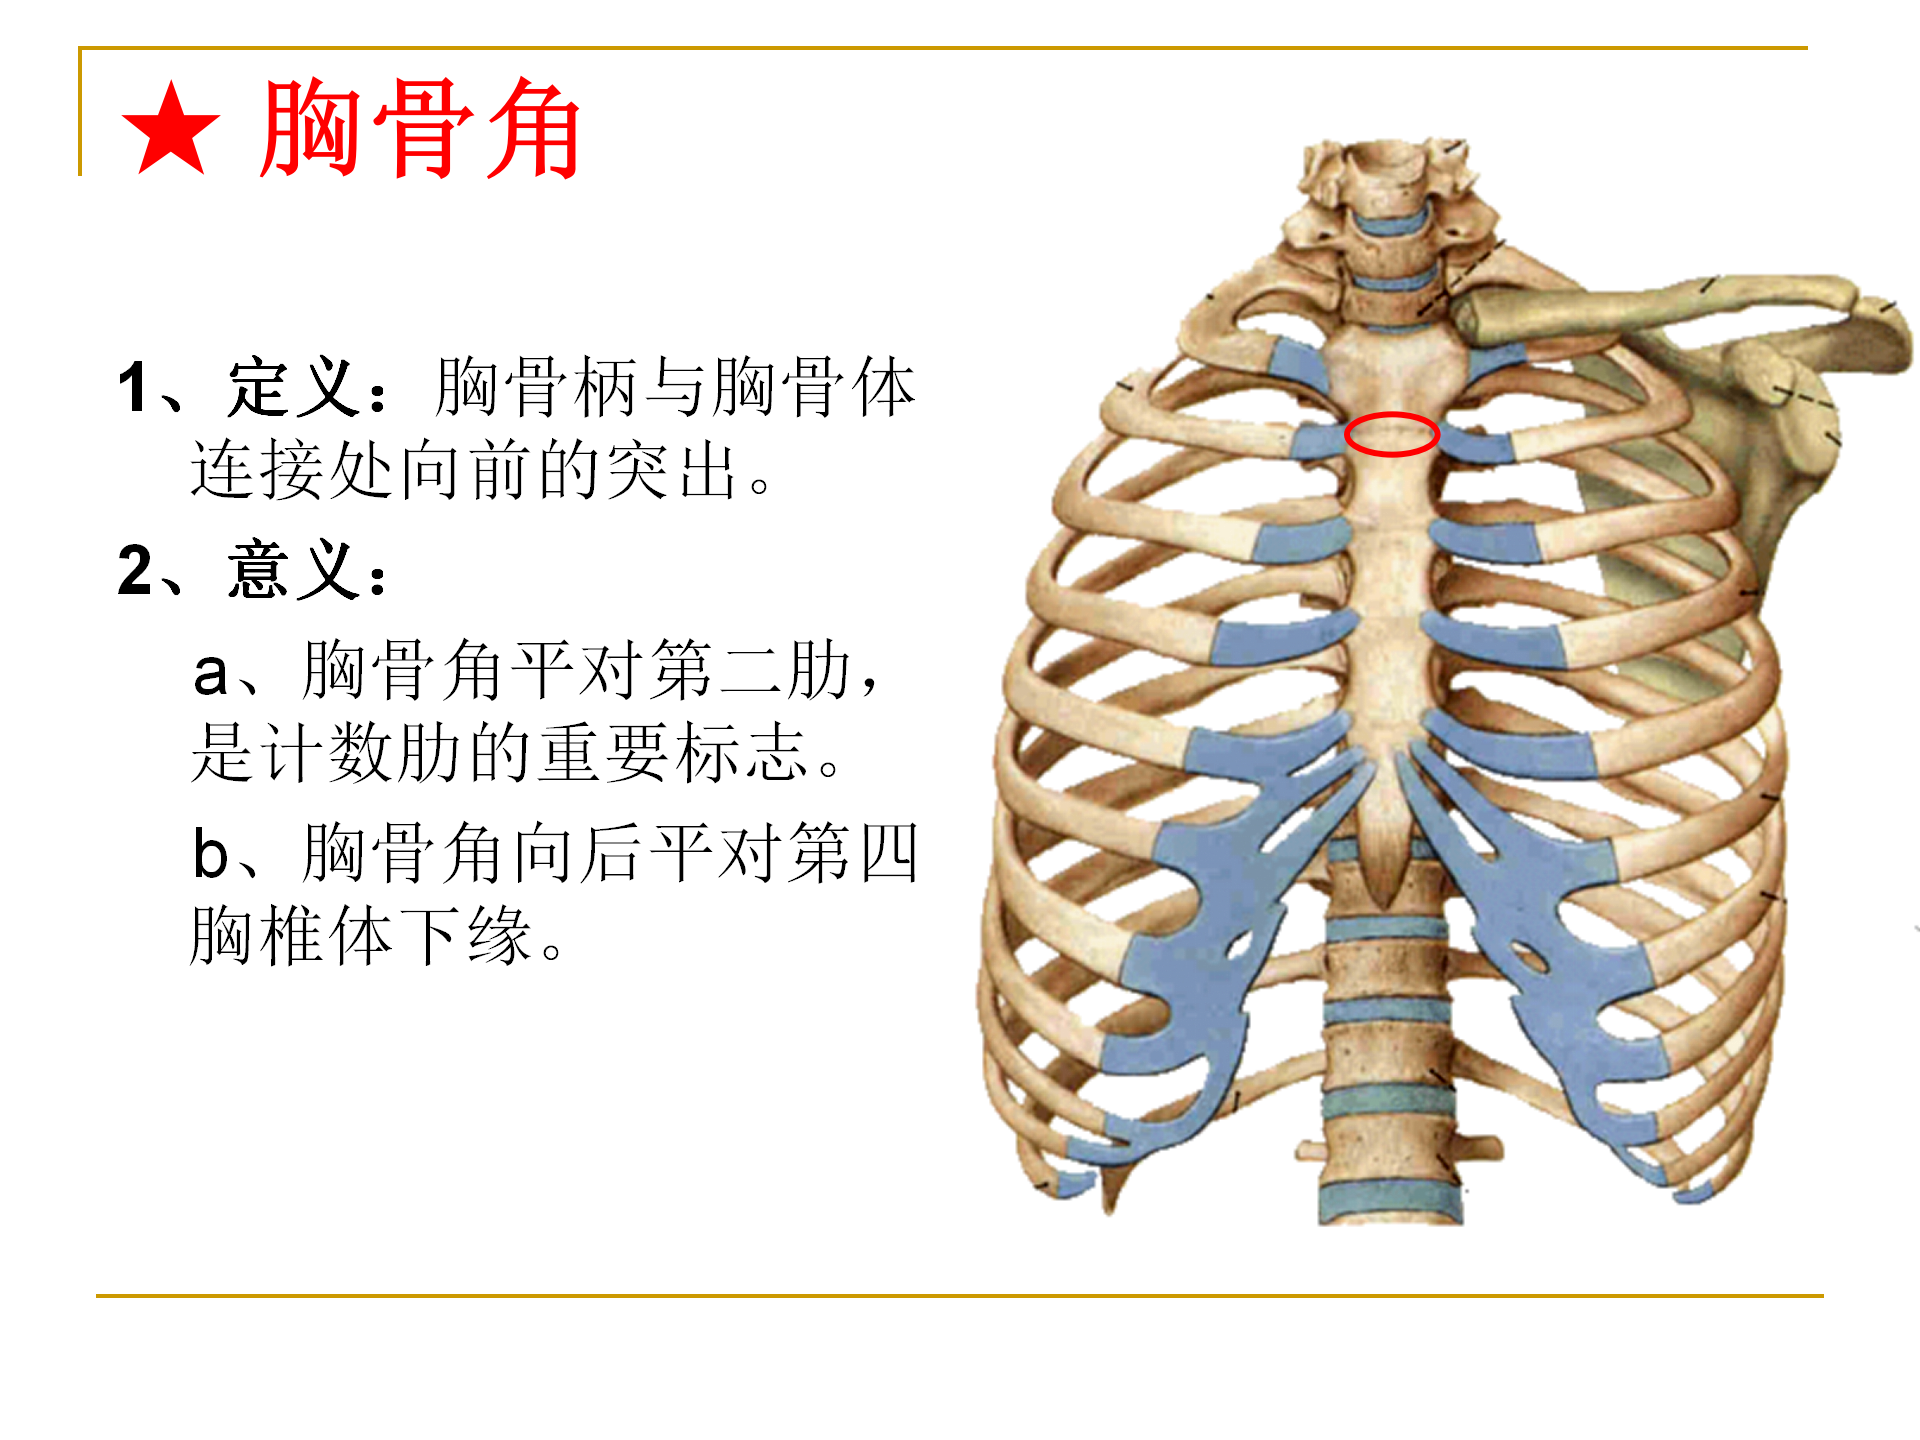 《人体解剖学》--躯干骨解剖_30.png